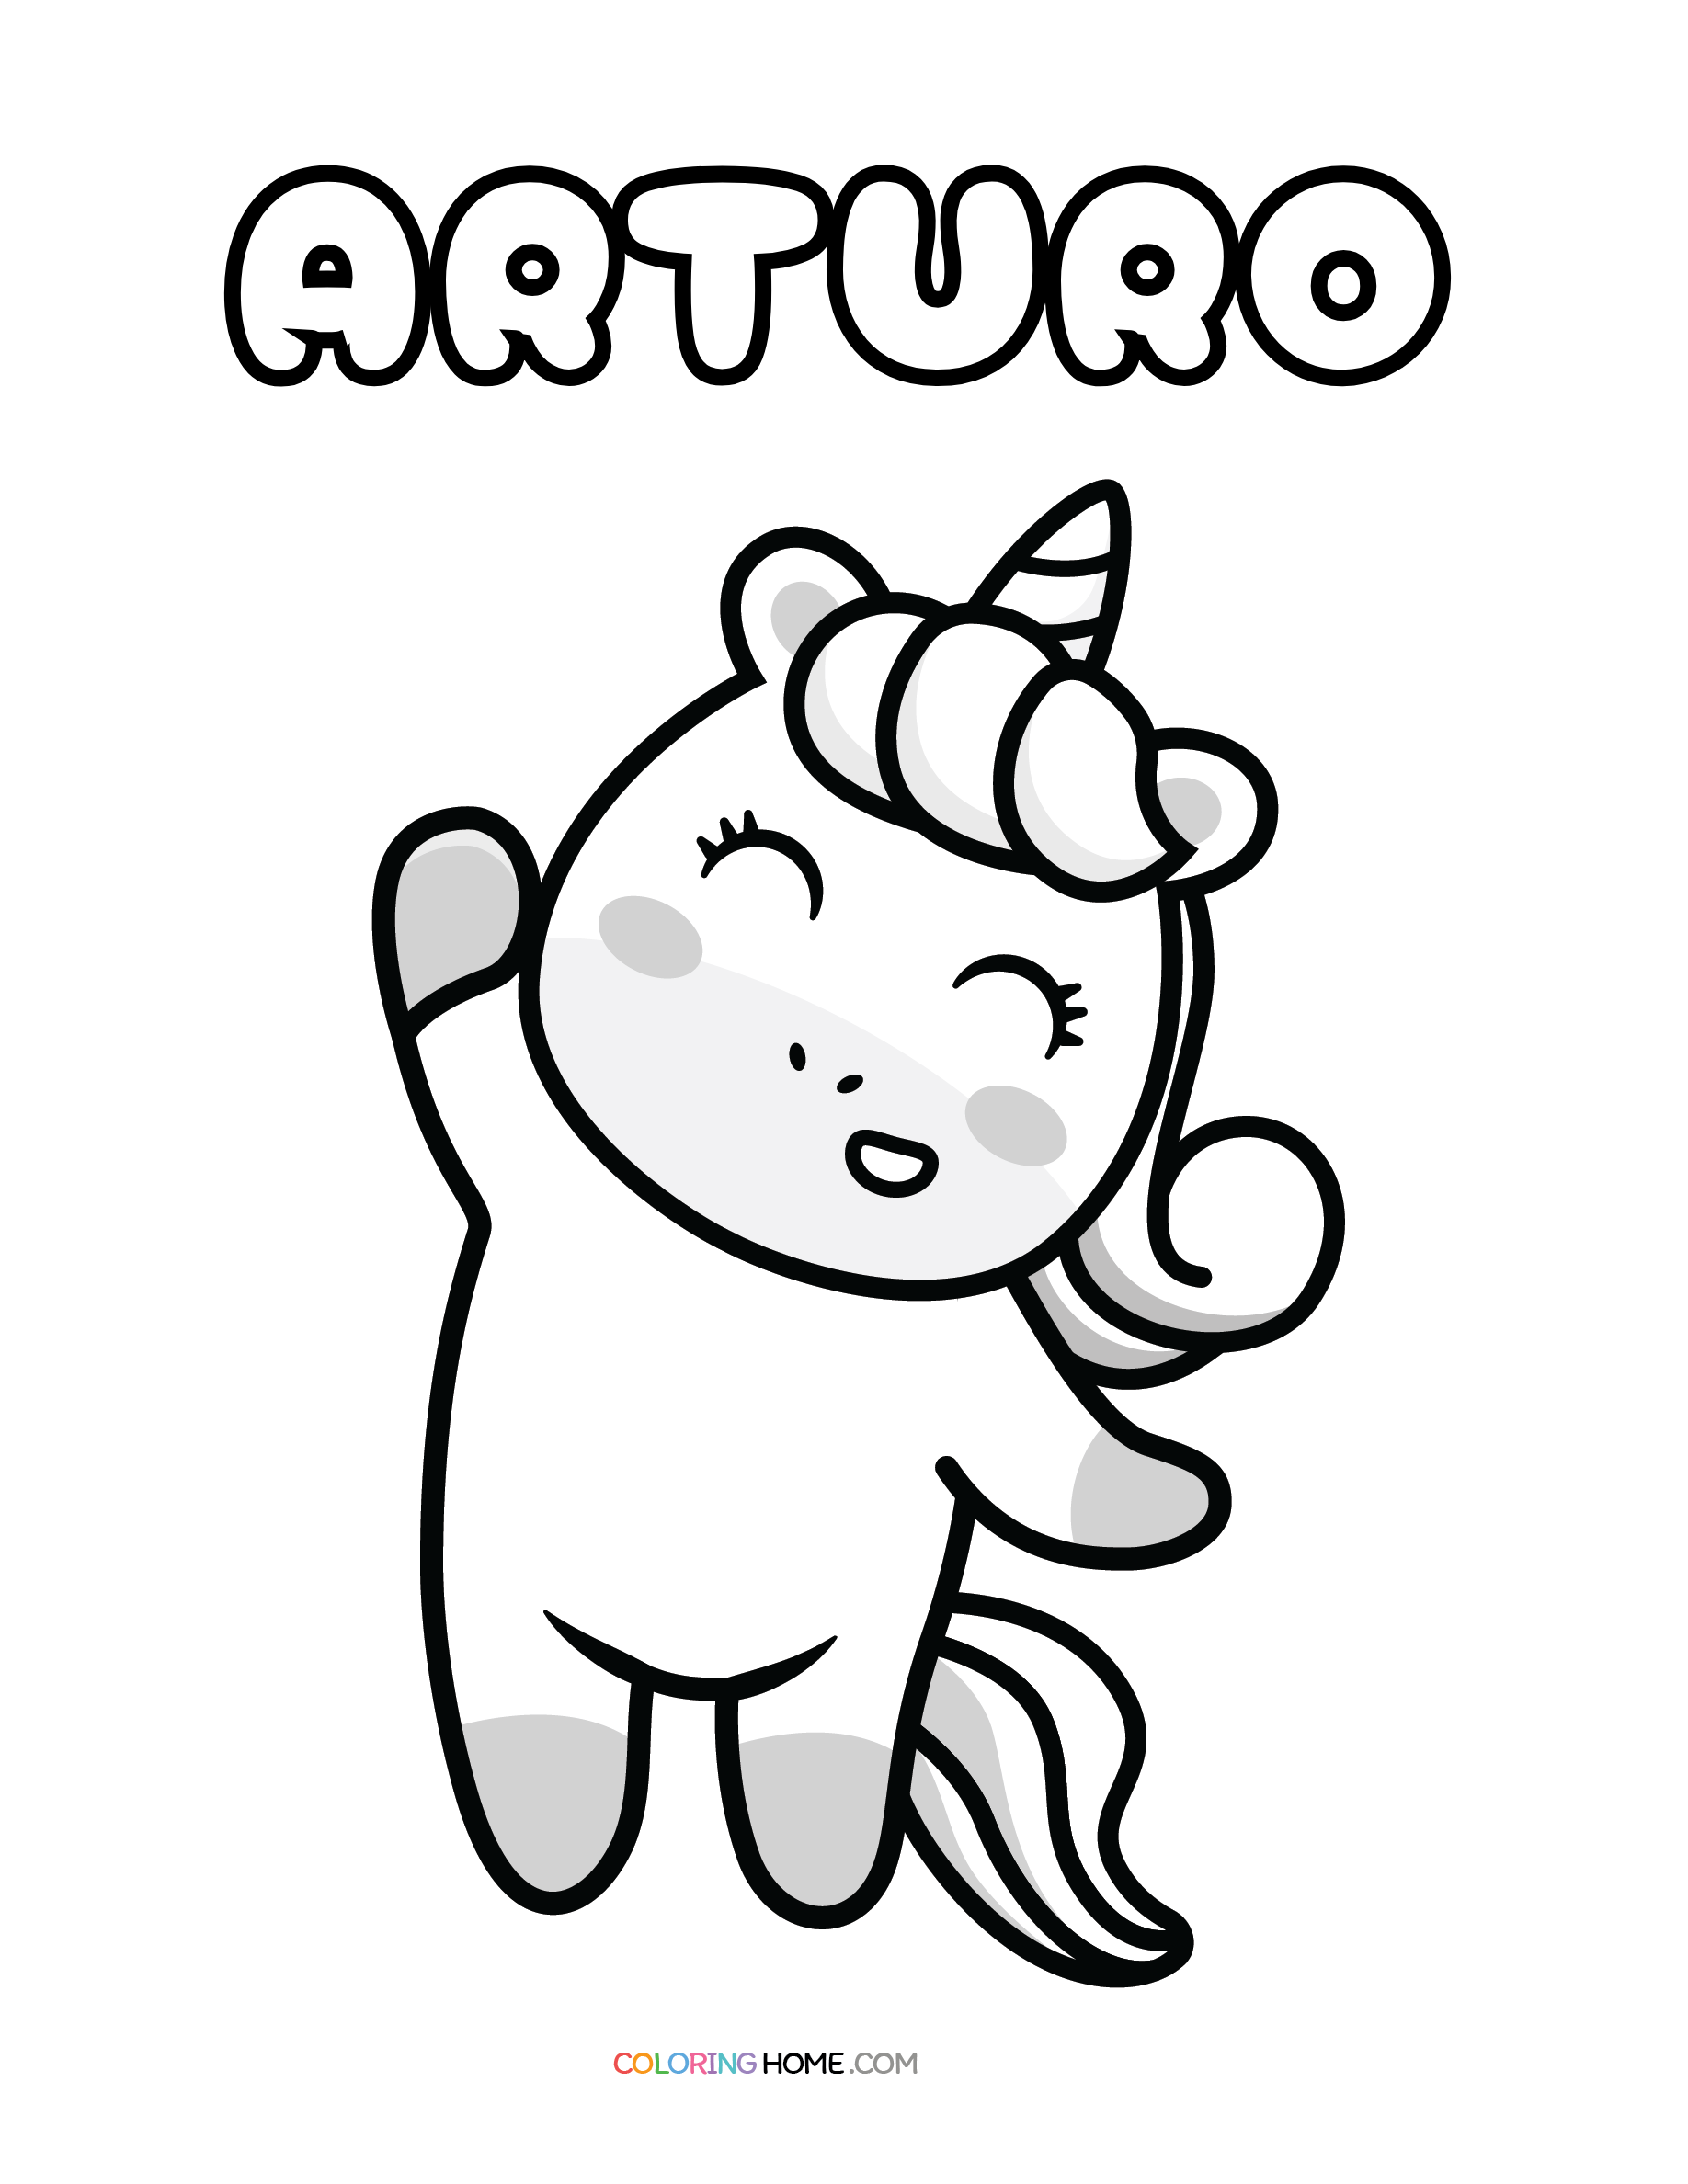 Arturo unicorn coloring page